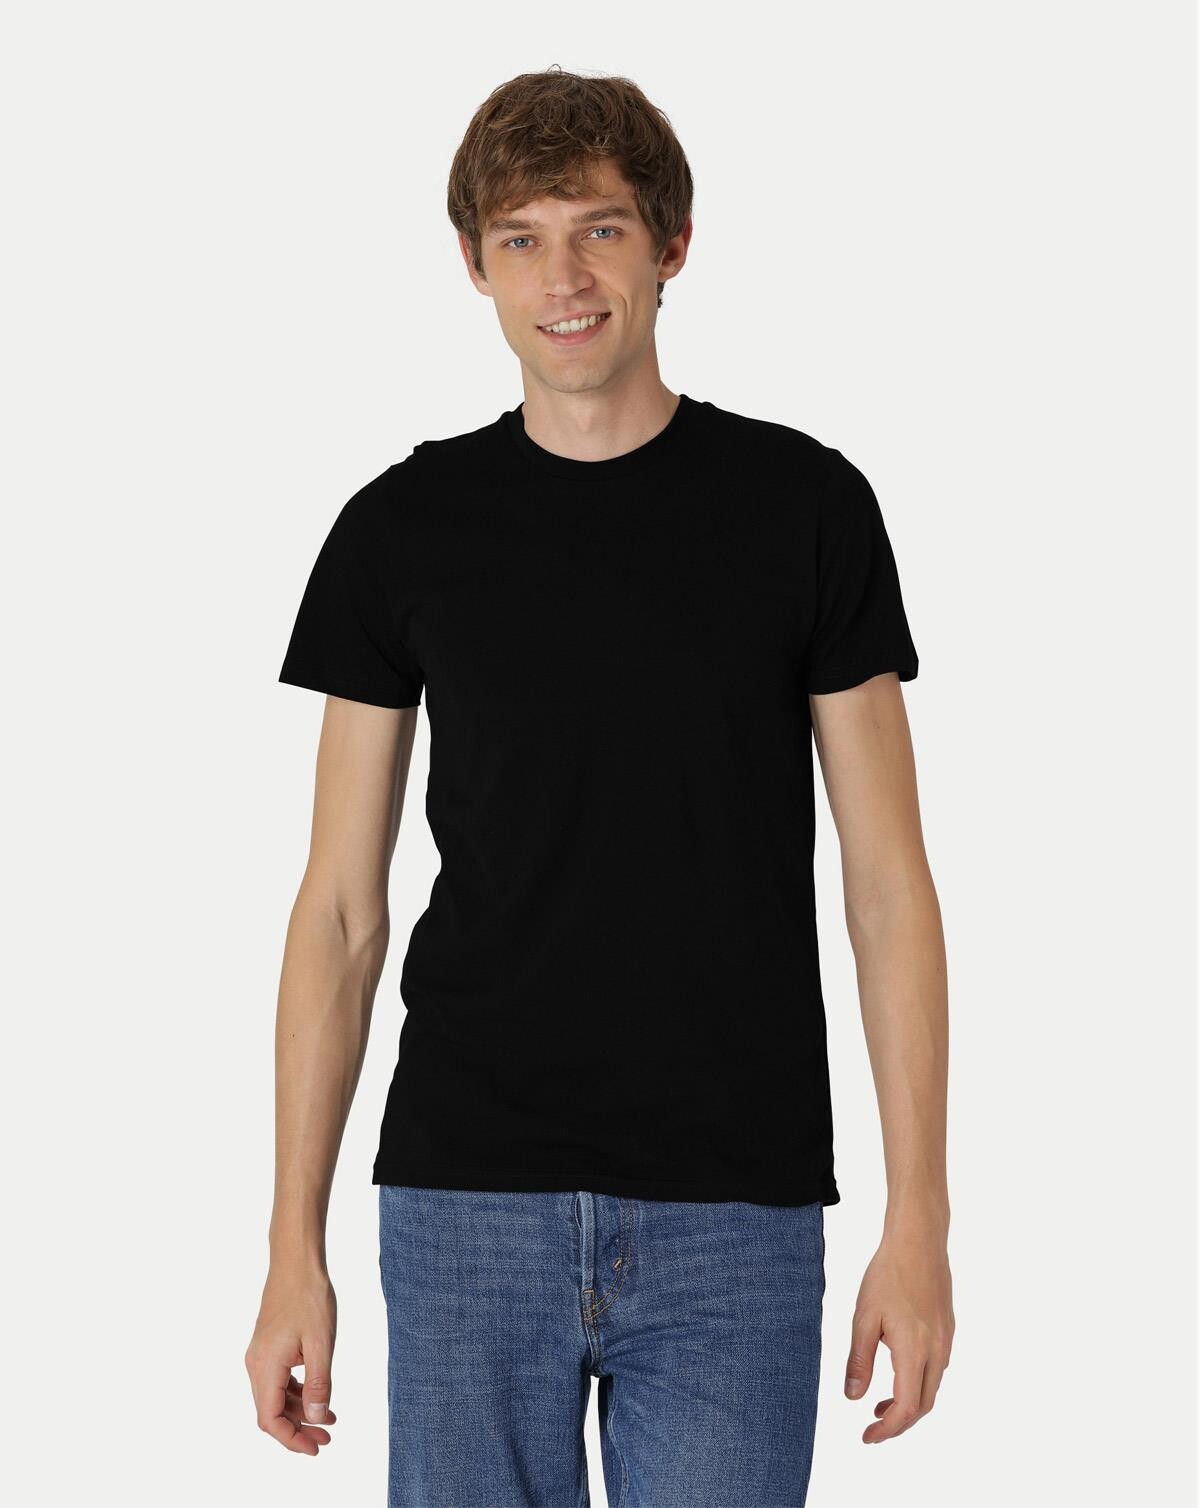 Neutral Økologisk T-shirt til - Tætsiddende (Sort, 3XL)